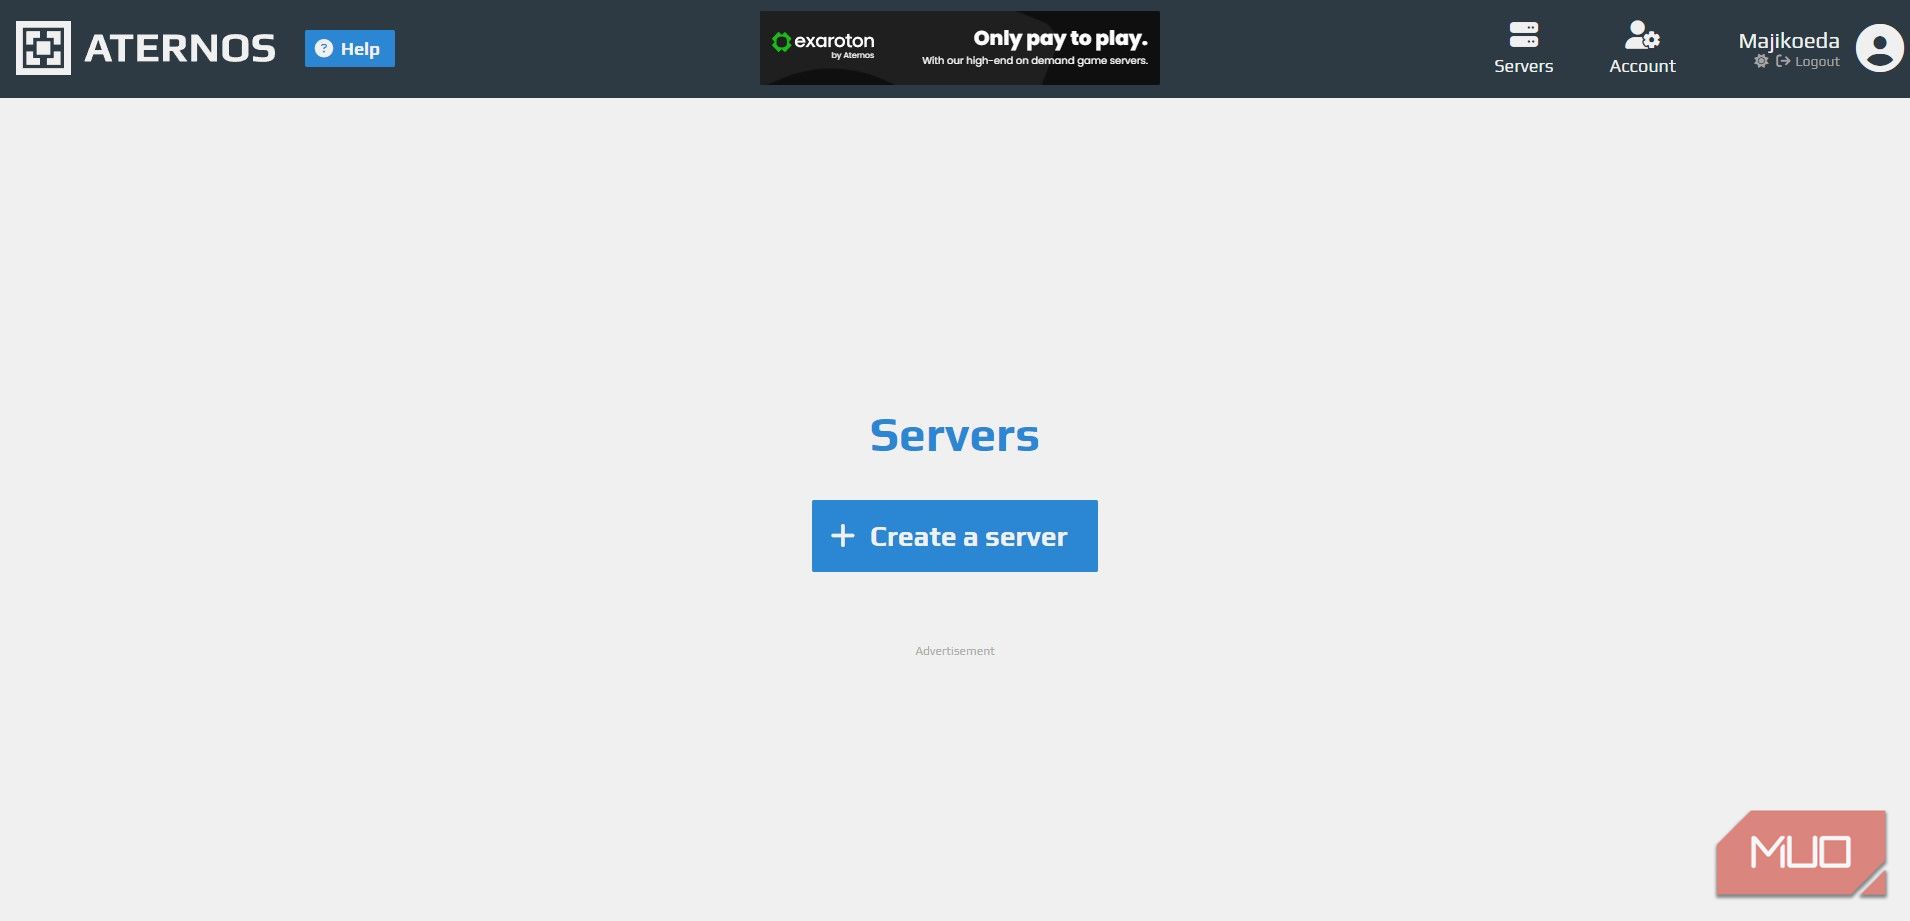 Aternos Create a Server button